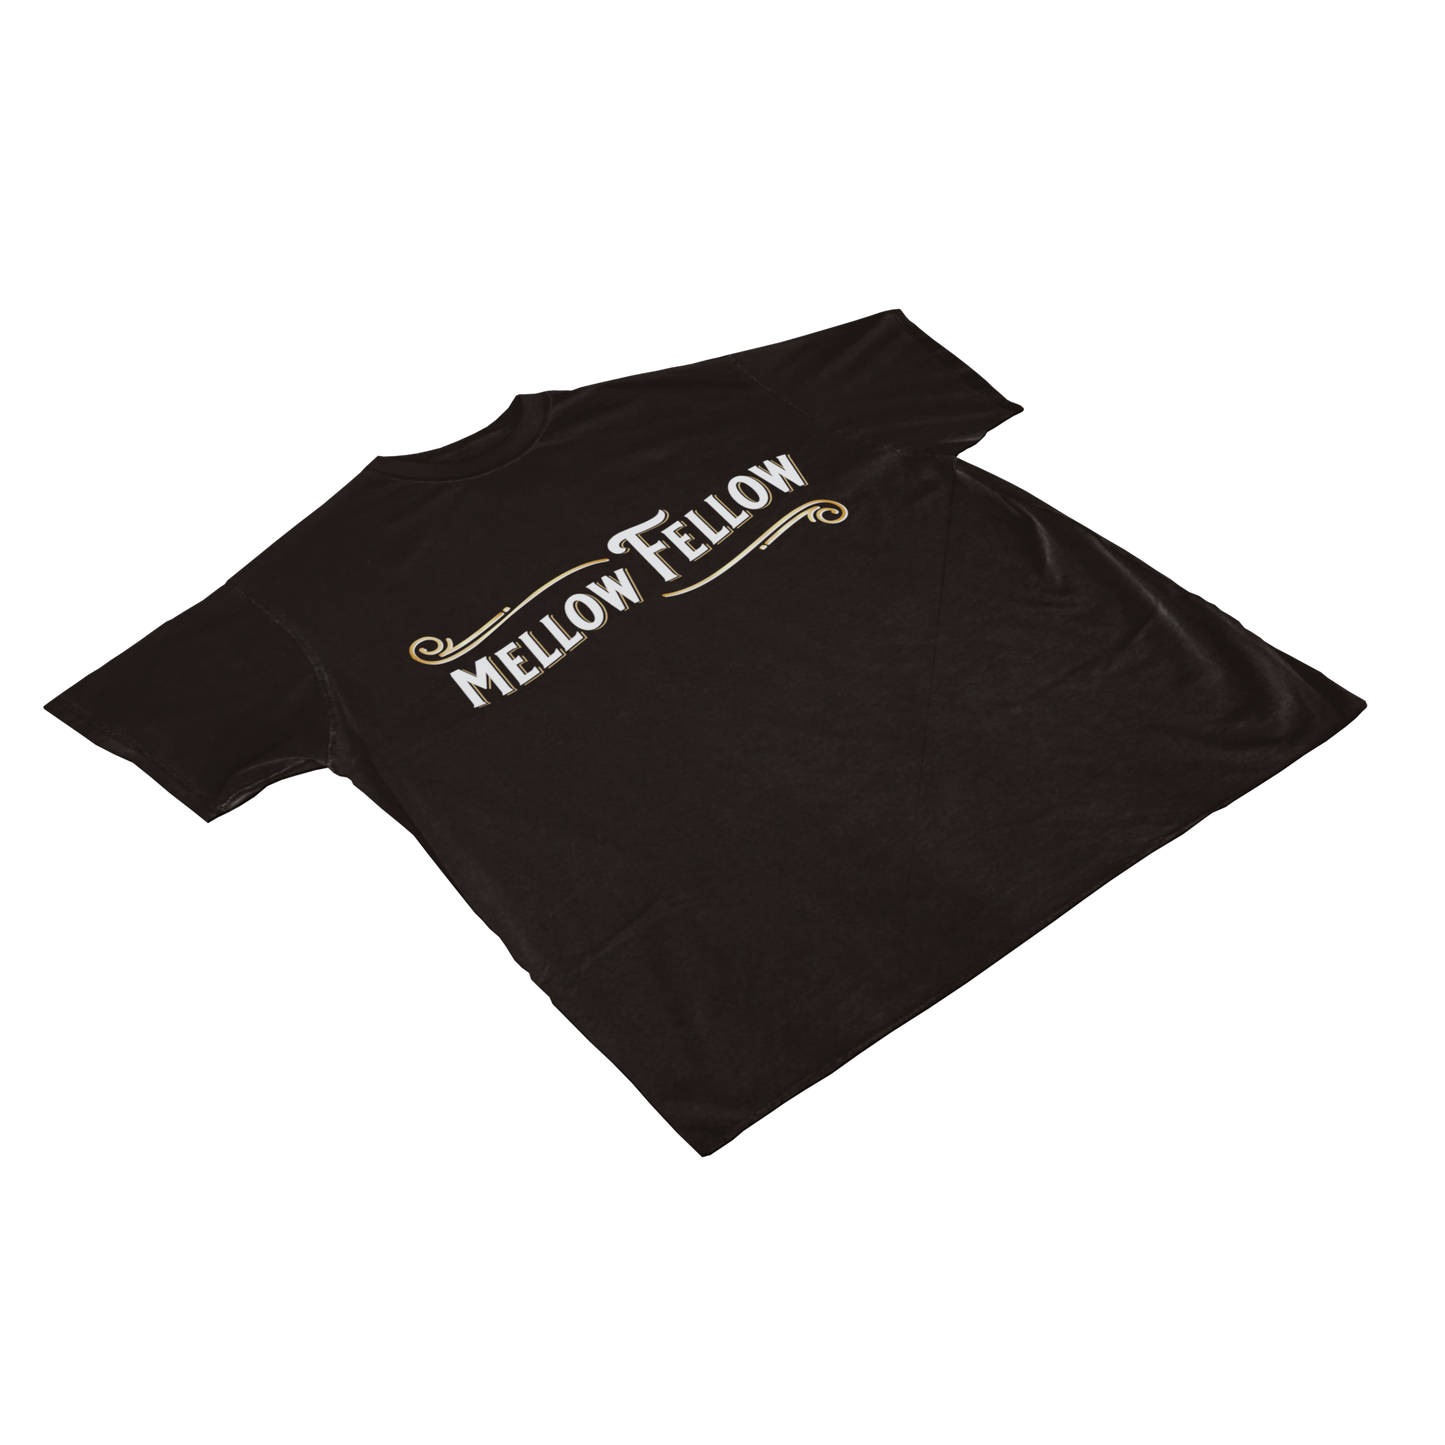 Mellow Fellow Black Logo T-Shirt Best Sales Price - Merch & Accesories